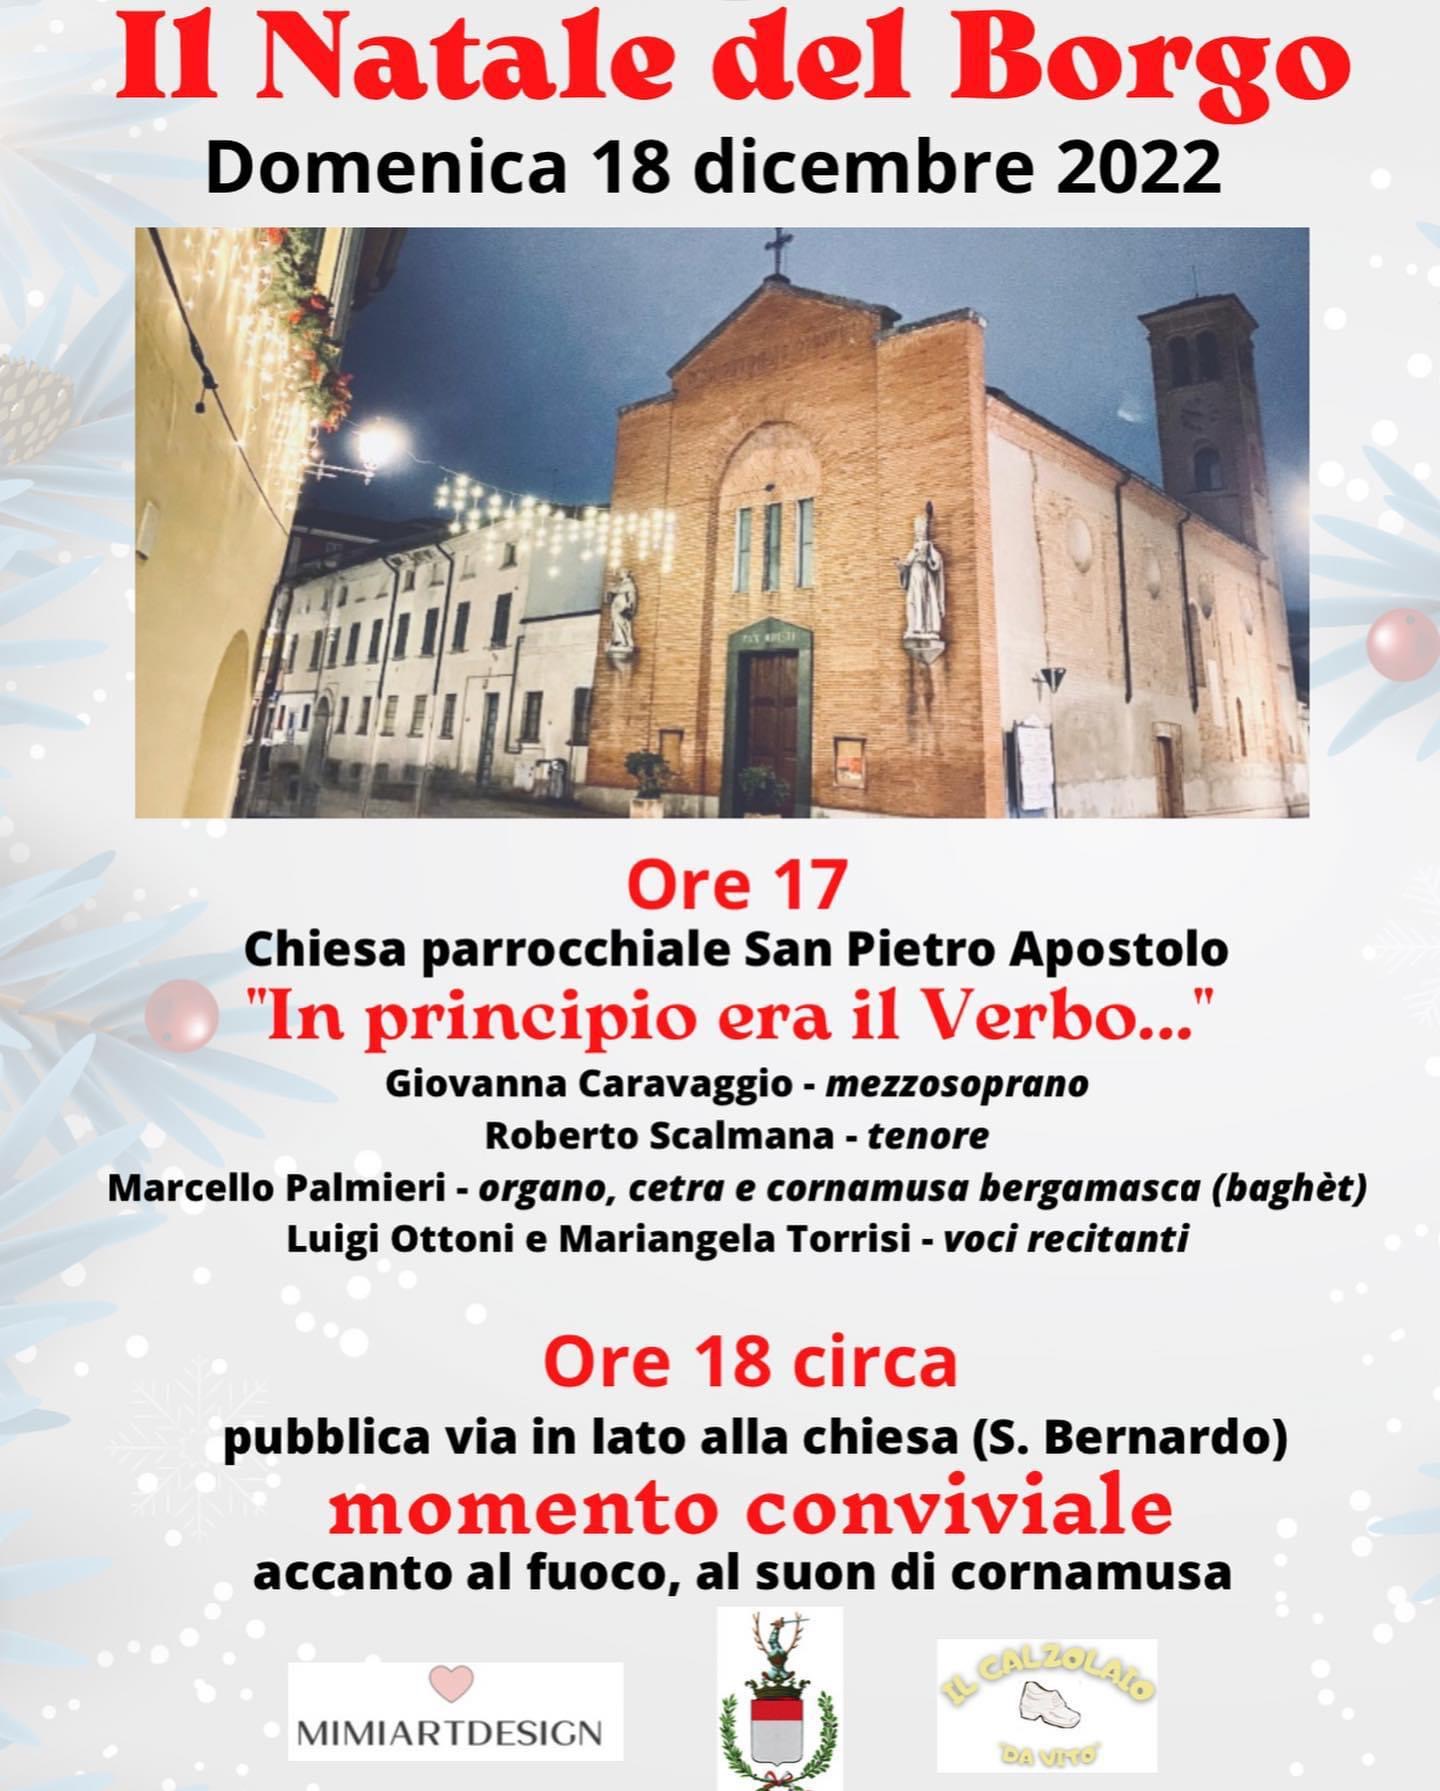 Il Natale del Borgo, domenica 18 dicembre con mimiartdesign